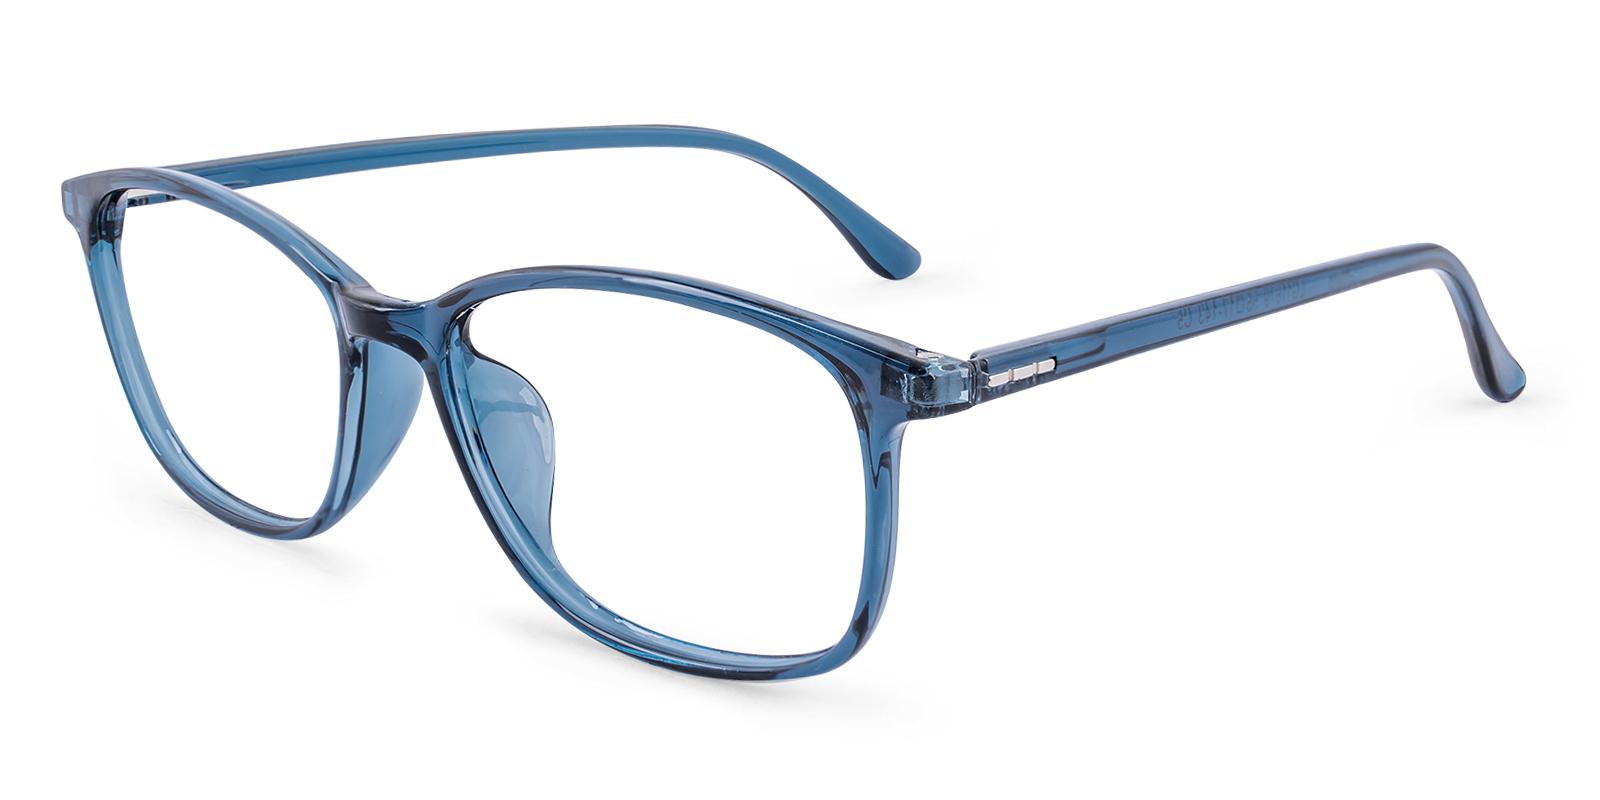 Teloain Blue TR Eyeglasses , UniversalBridgeFit , Lightweight Frames from ABBE Glasses